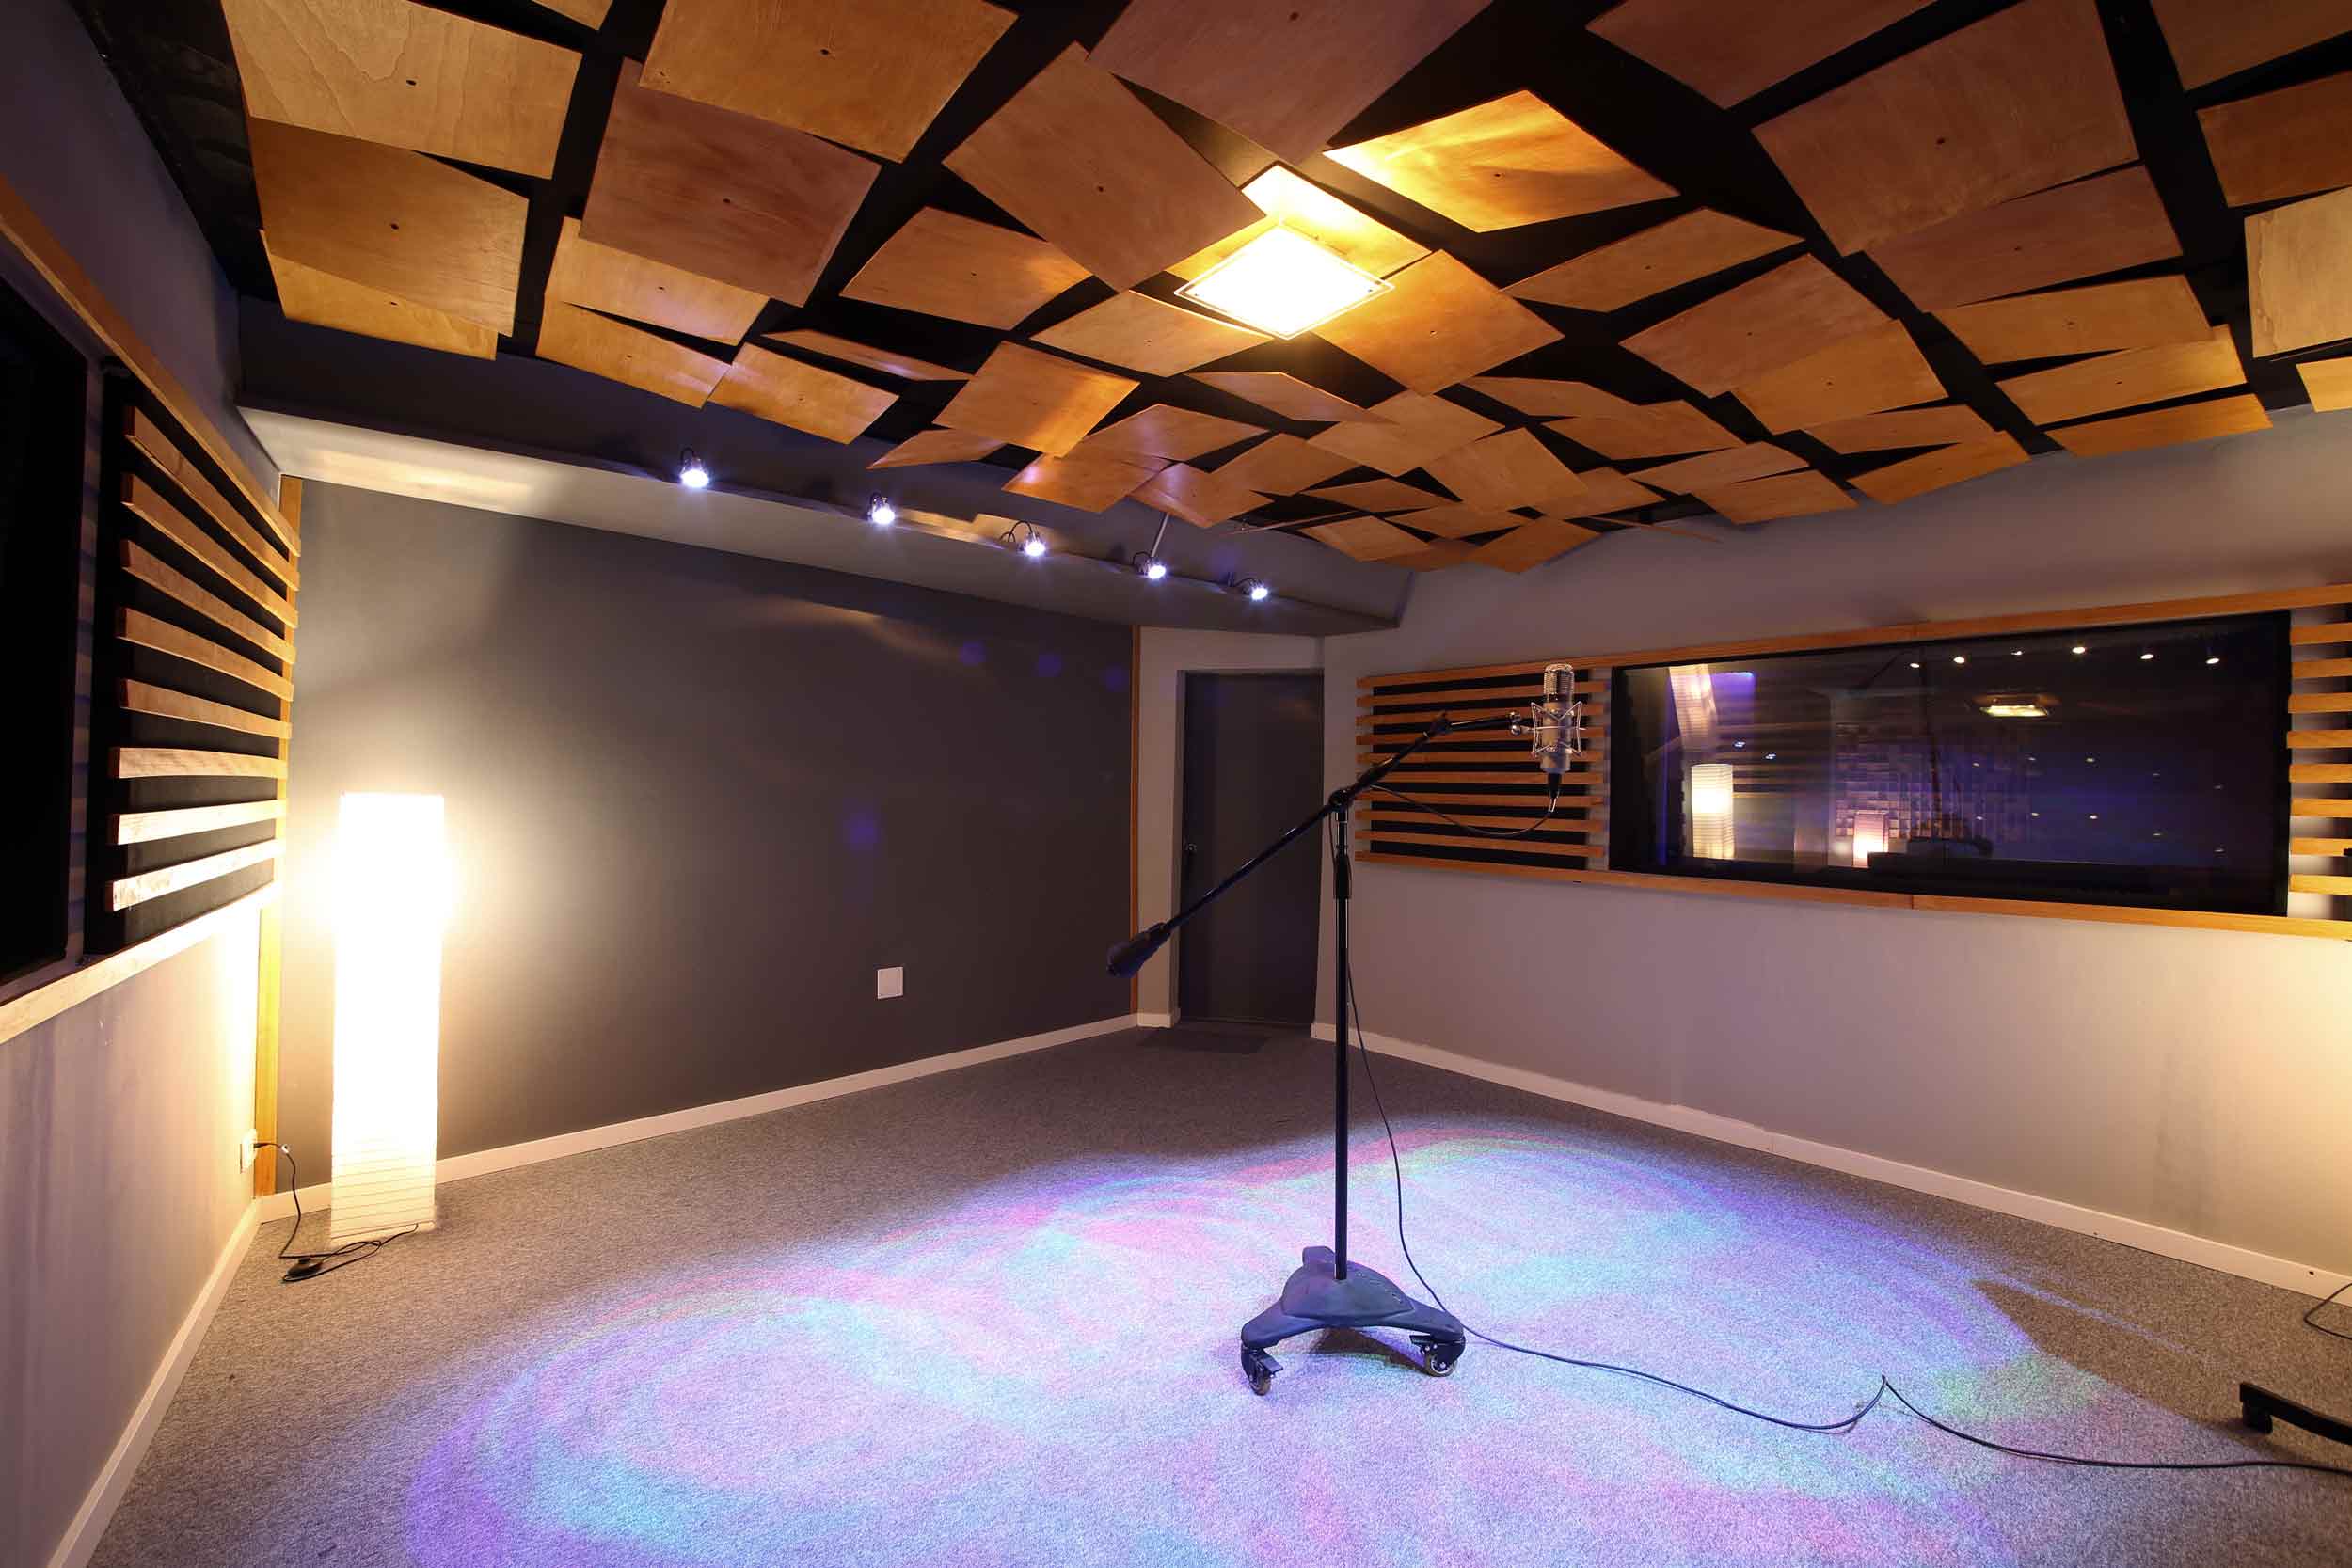 Студия где купить. Потолок в студии звукозаписи. Акустический потолок. Акустическая комната. Студия звукозаписи интерьер.